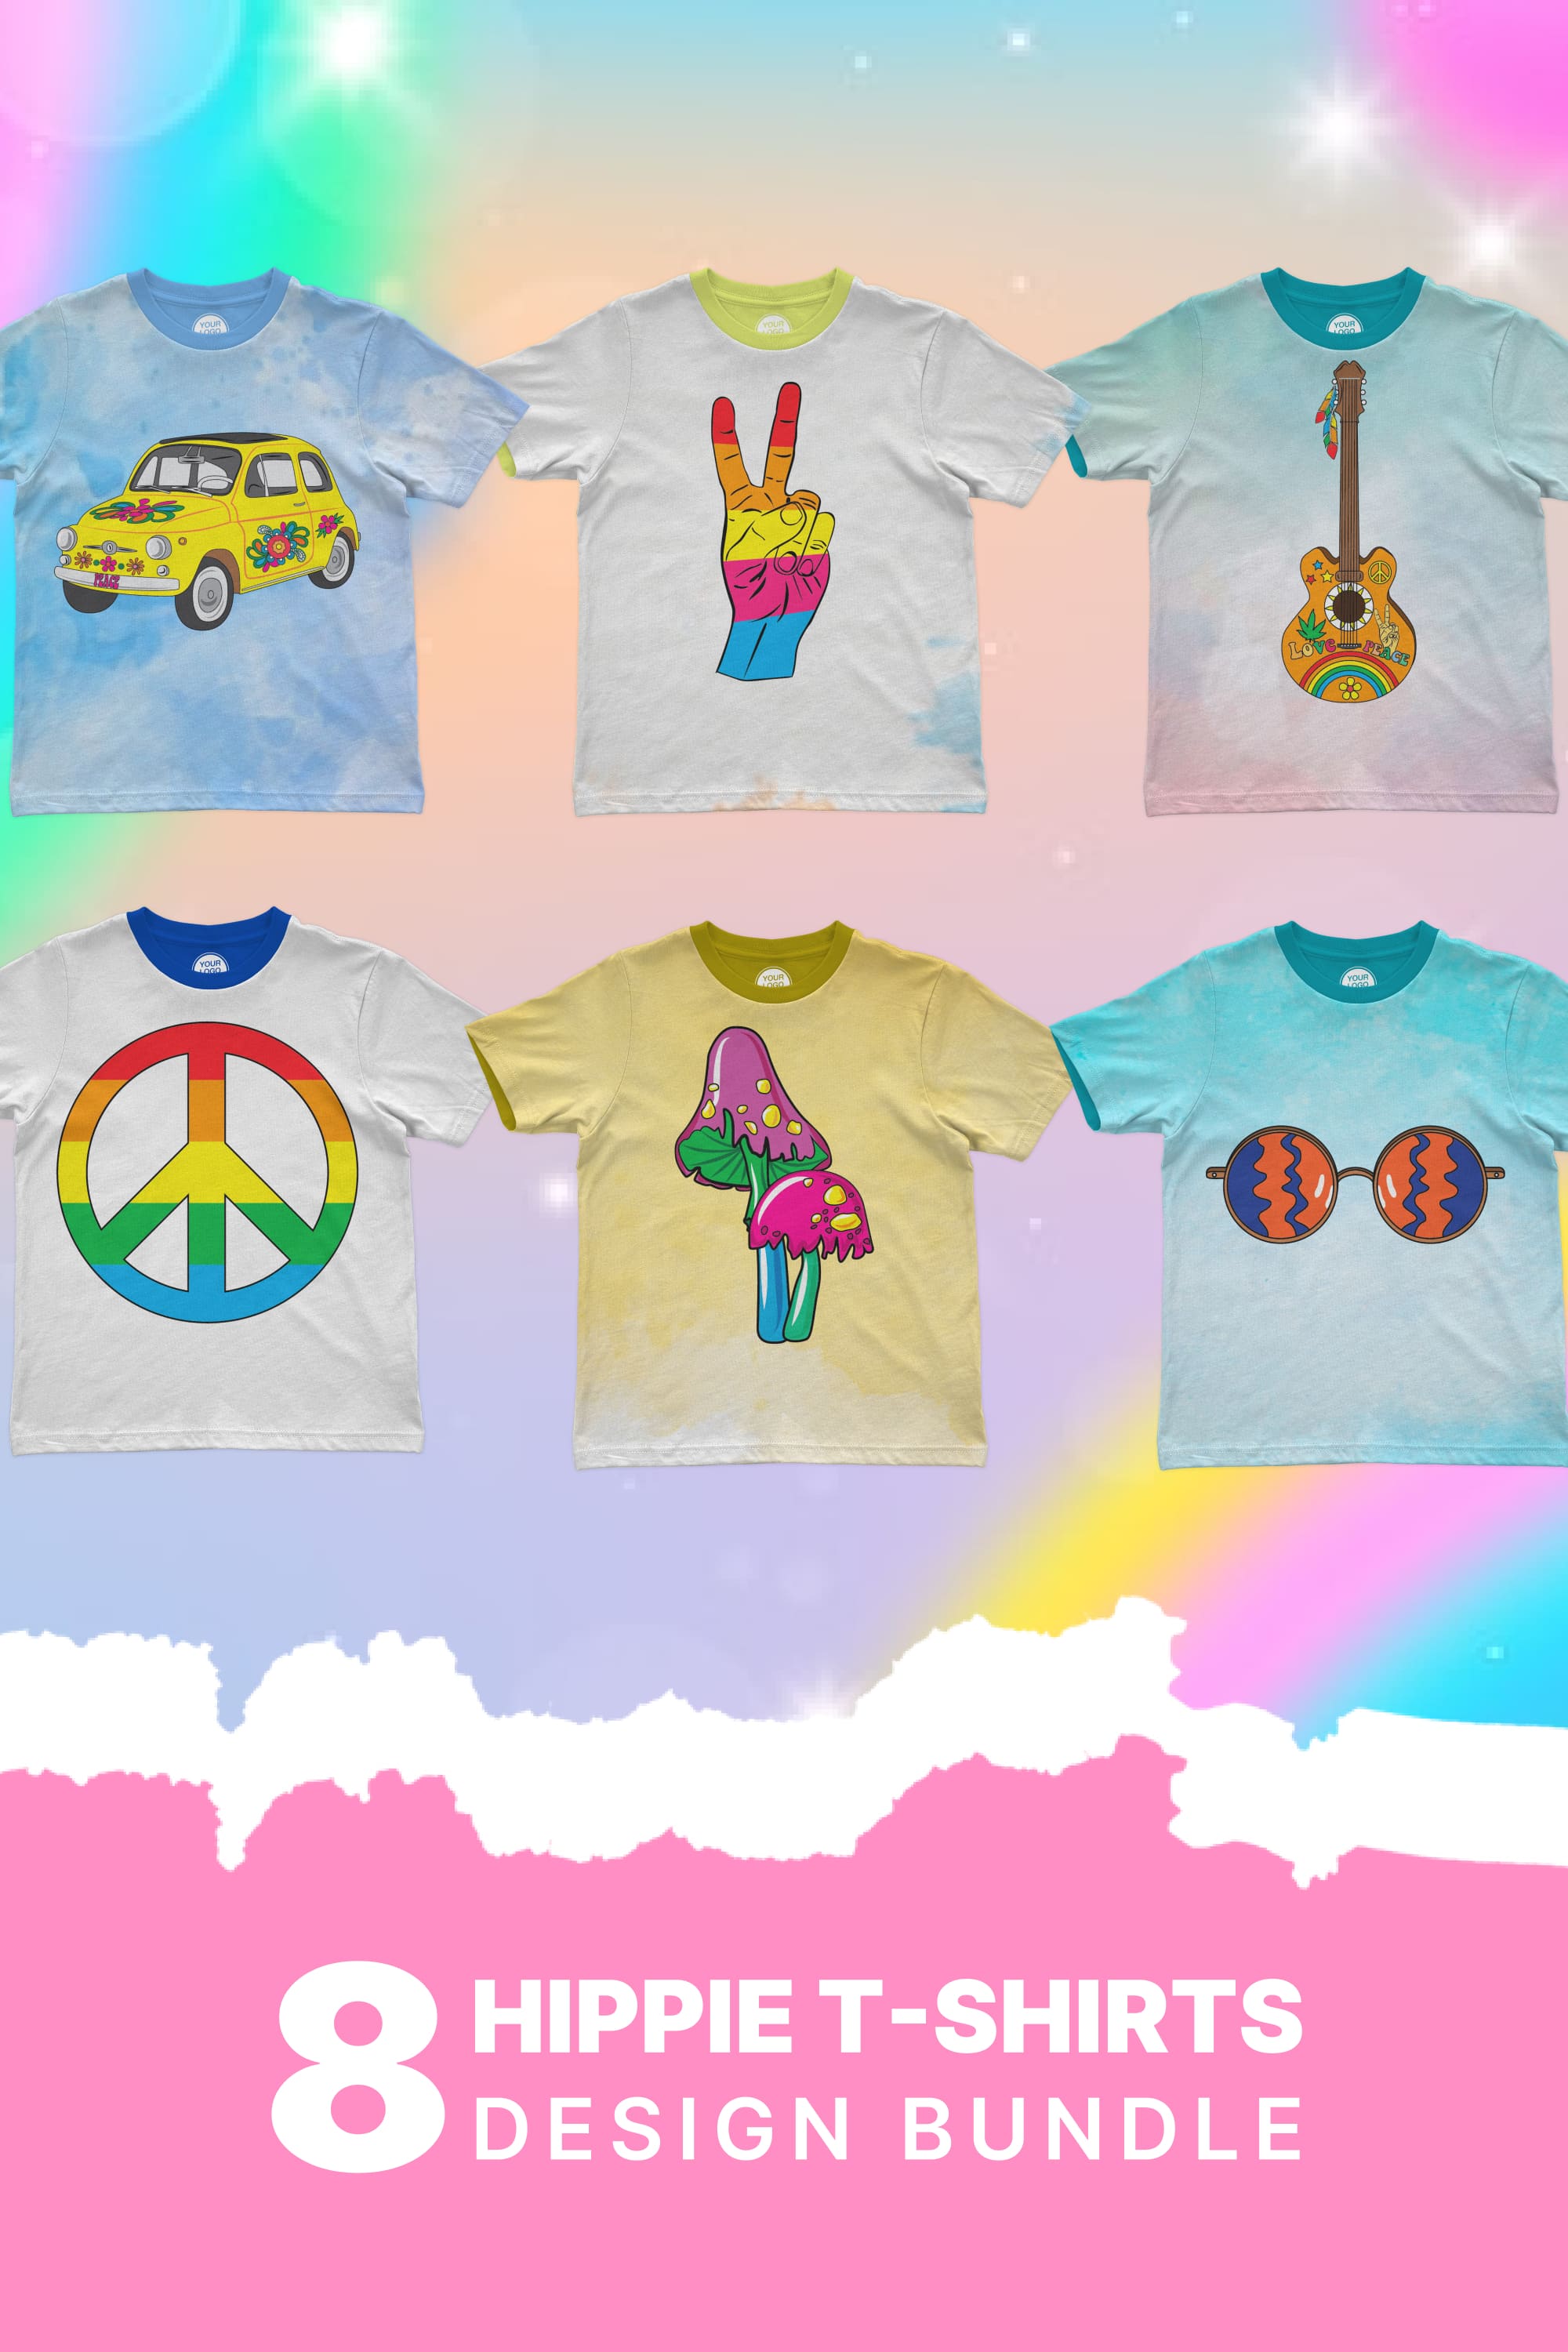 Hippie t-shirt designs bundle - pinterest image preview.